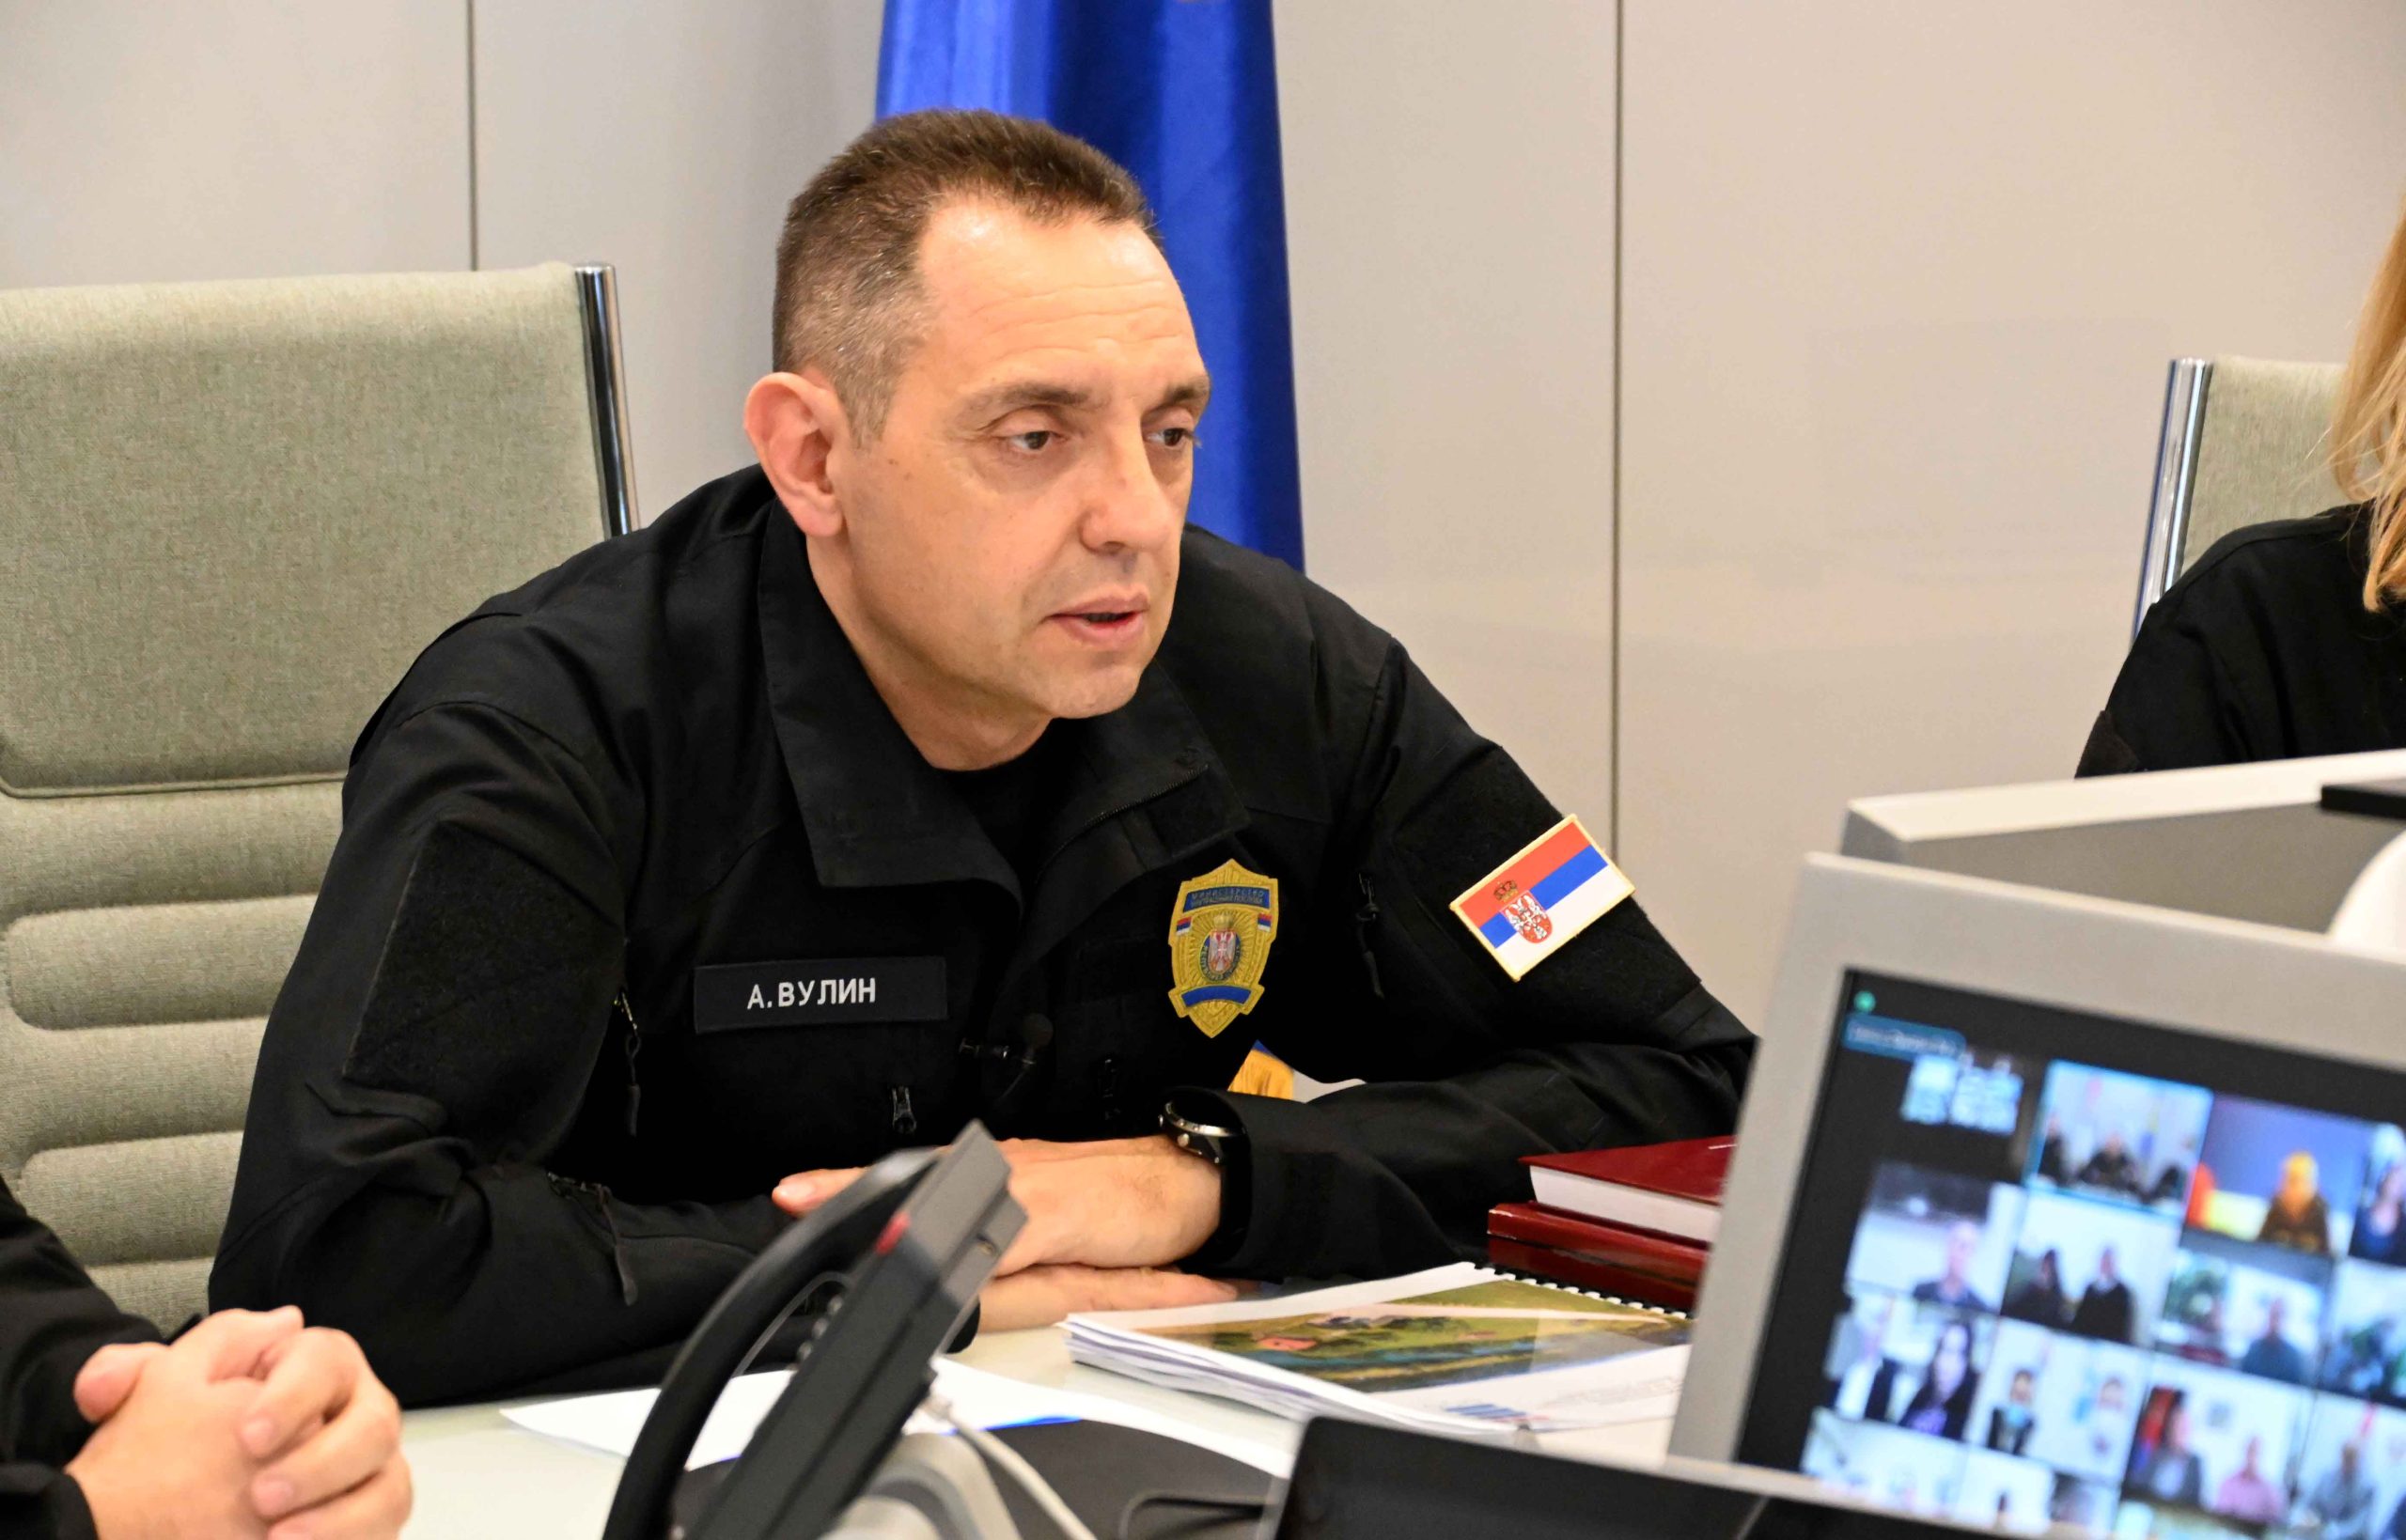 NE MOGU SE SPREČITI Ministar unutrašnjih poslova Aleksandar Vulin izjavio je da su dojave o bombama kao korona